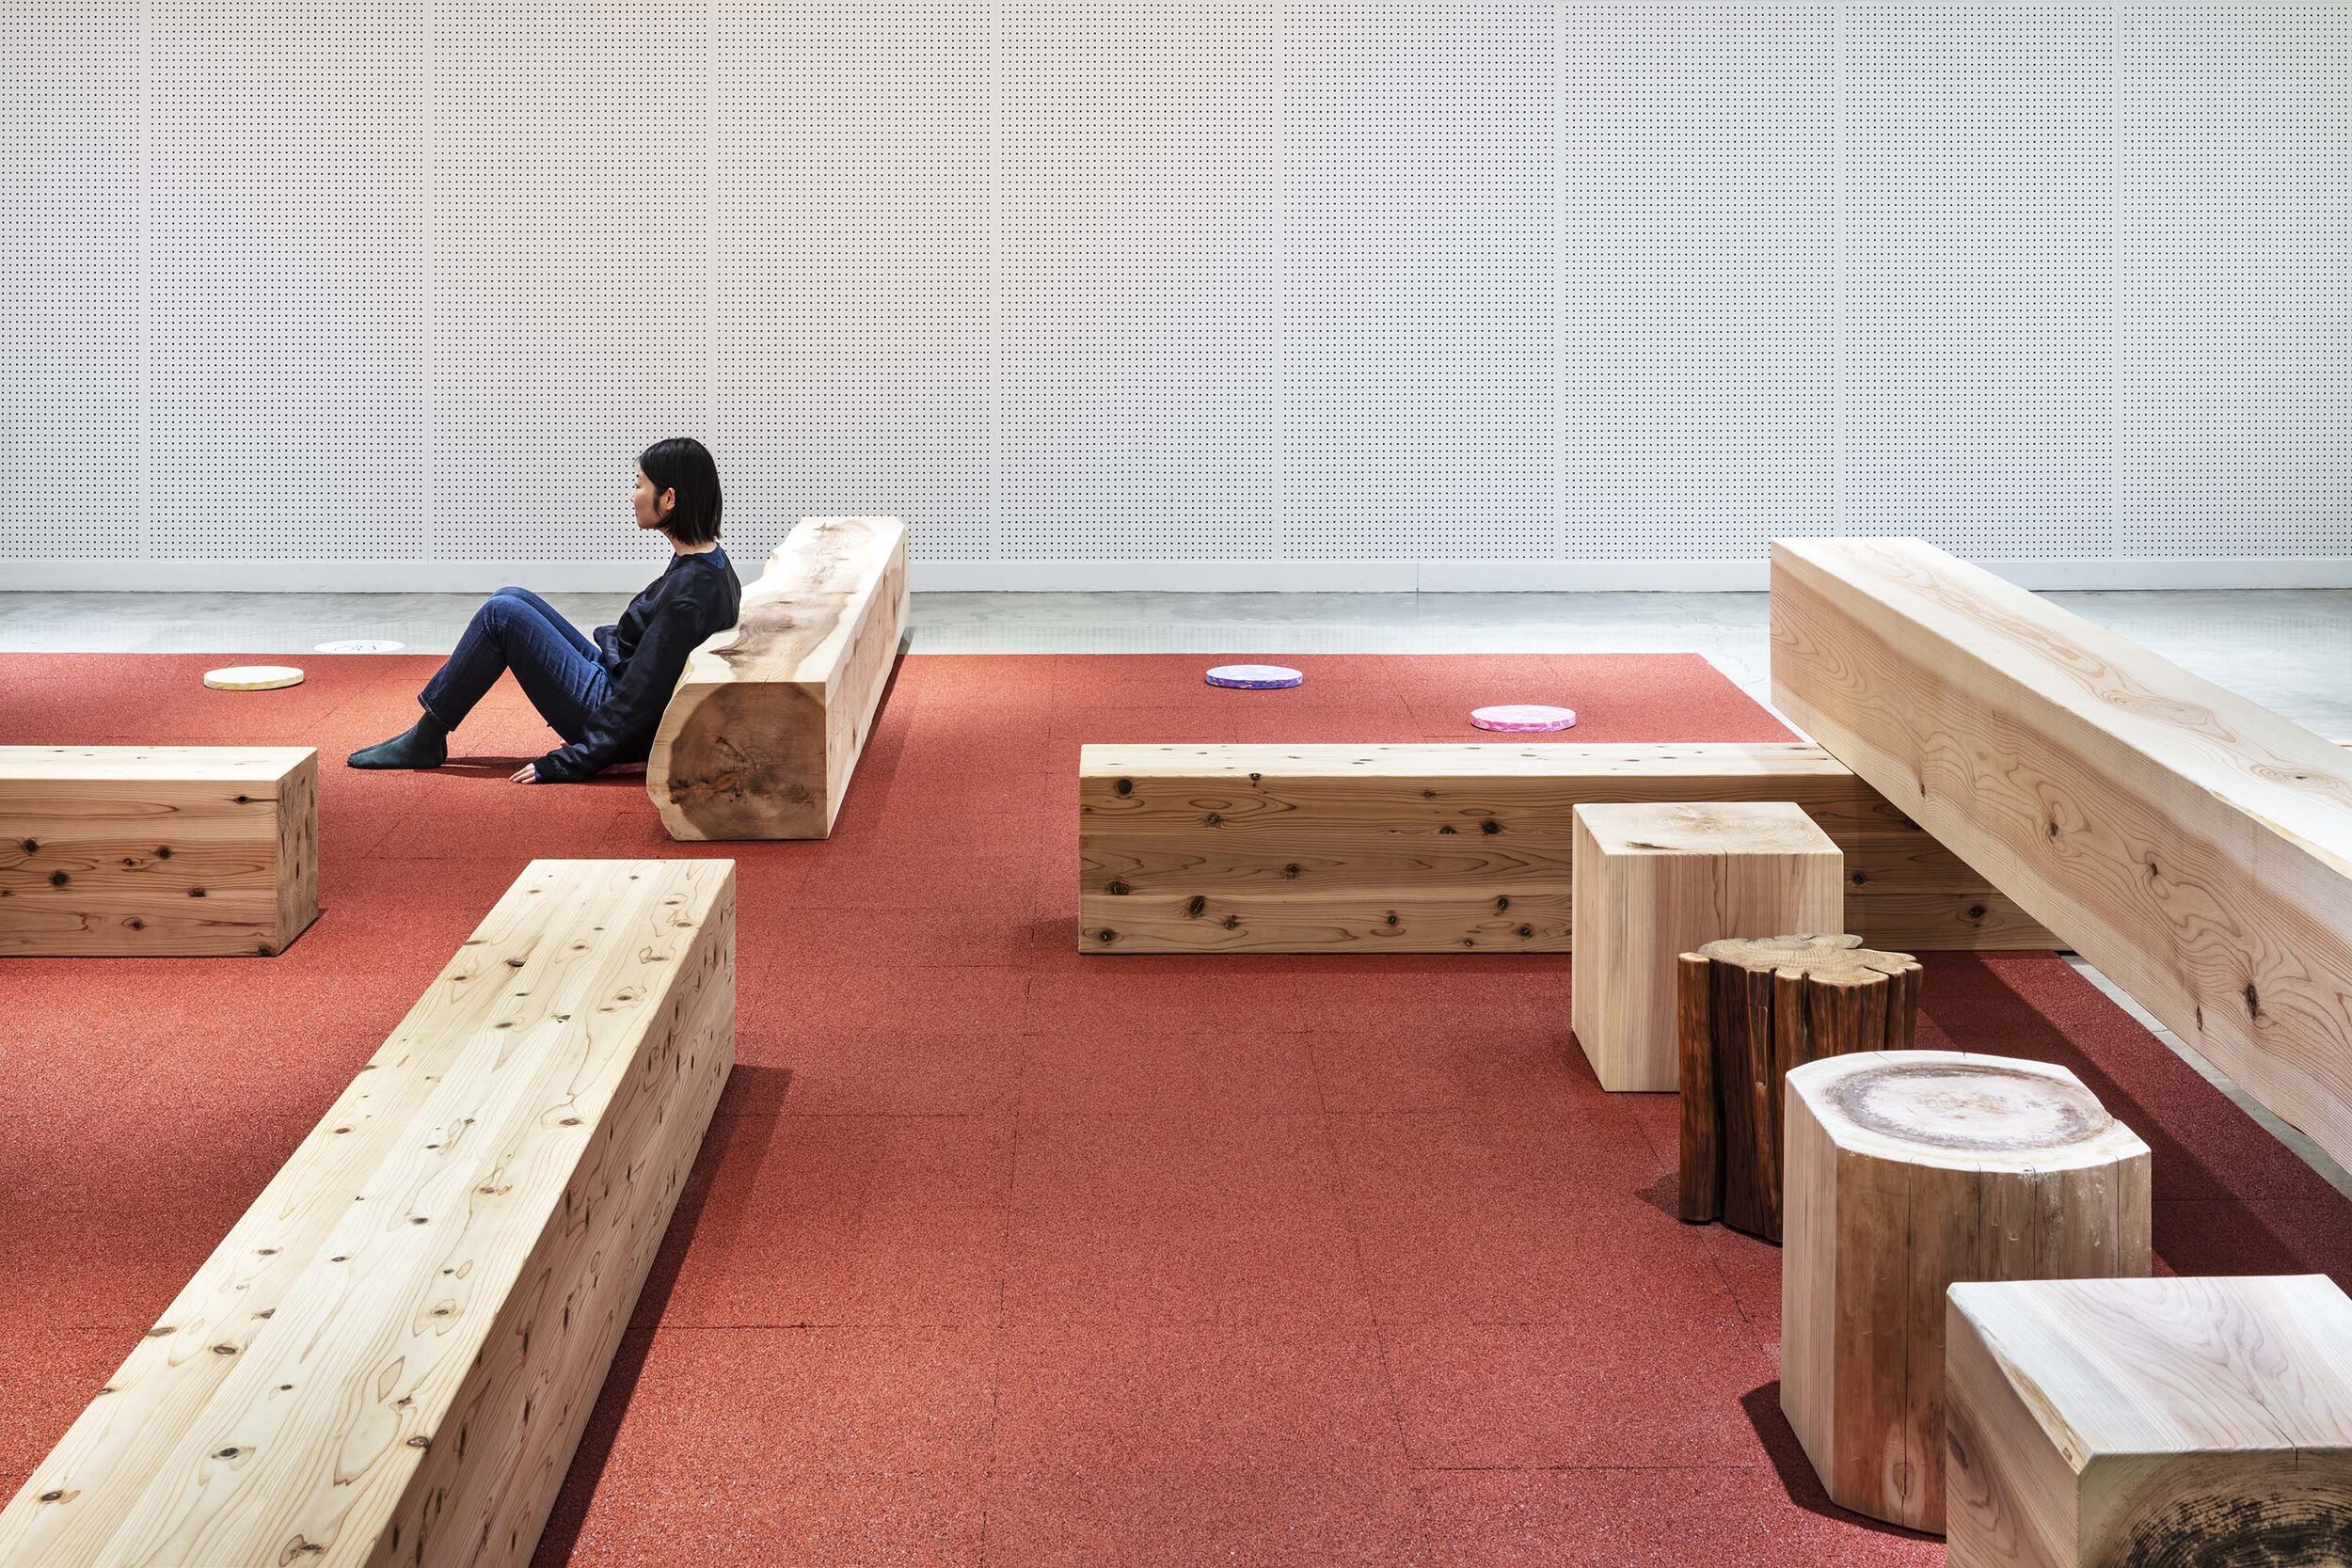  トラフ建築設計事務所 Torafu Architectsの鈴野浩一と禿真哉がインテリアデザインを手掛けた「丸太広場キトキ」の休憩スペース 